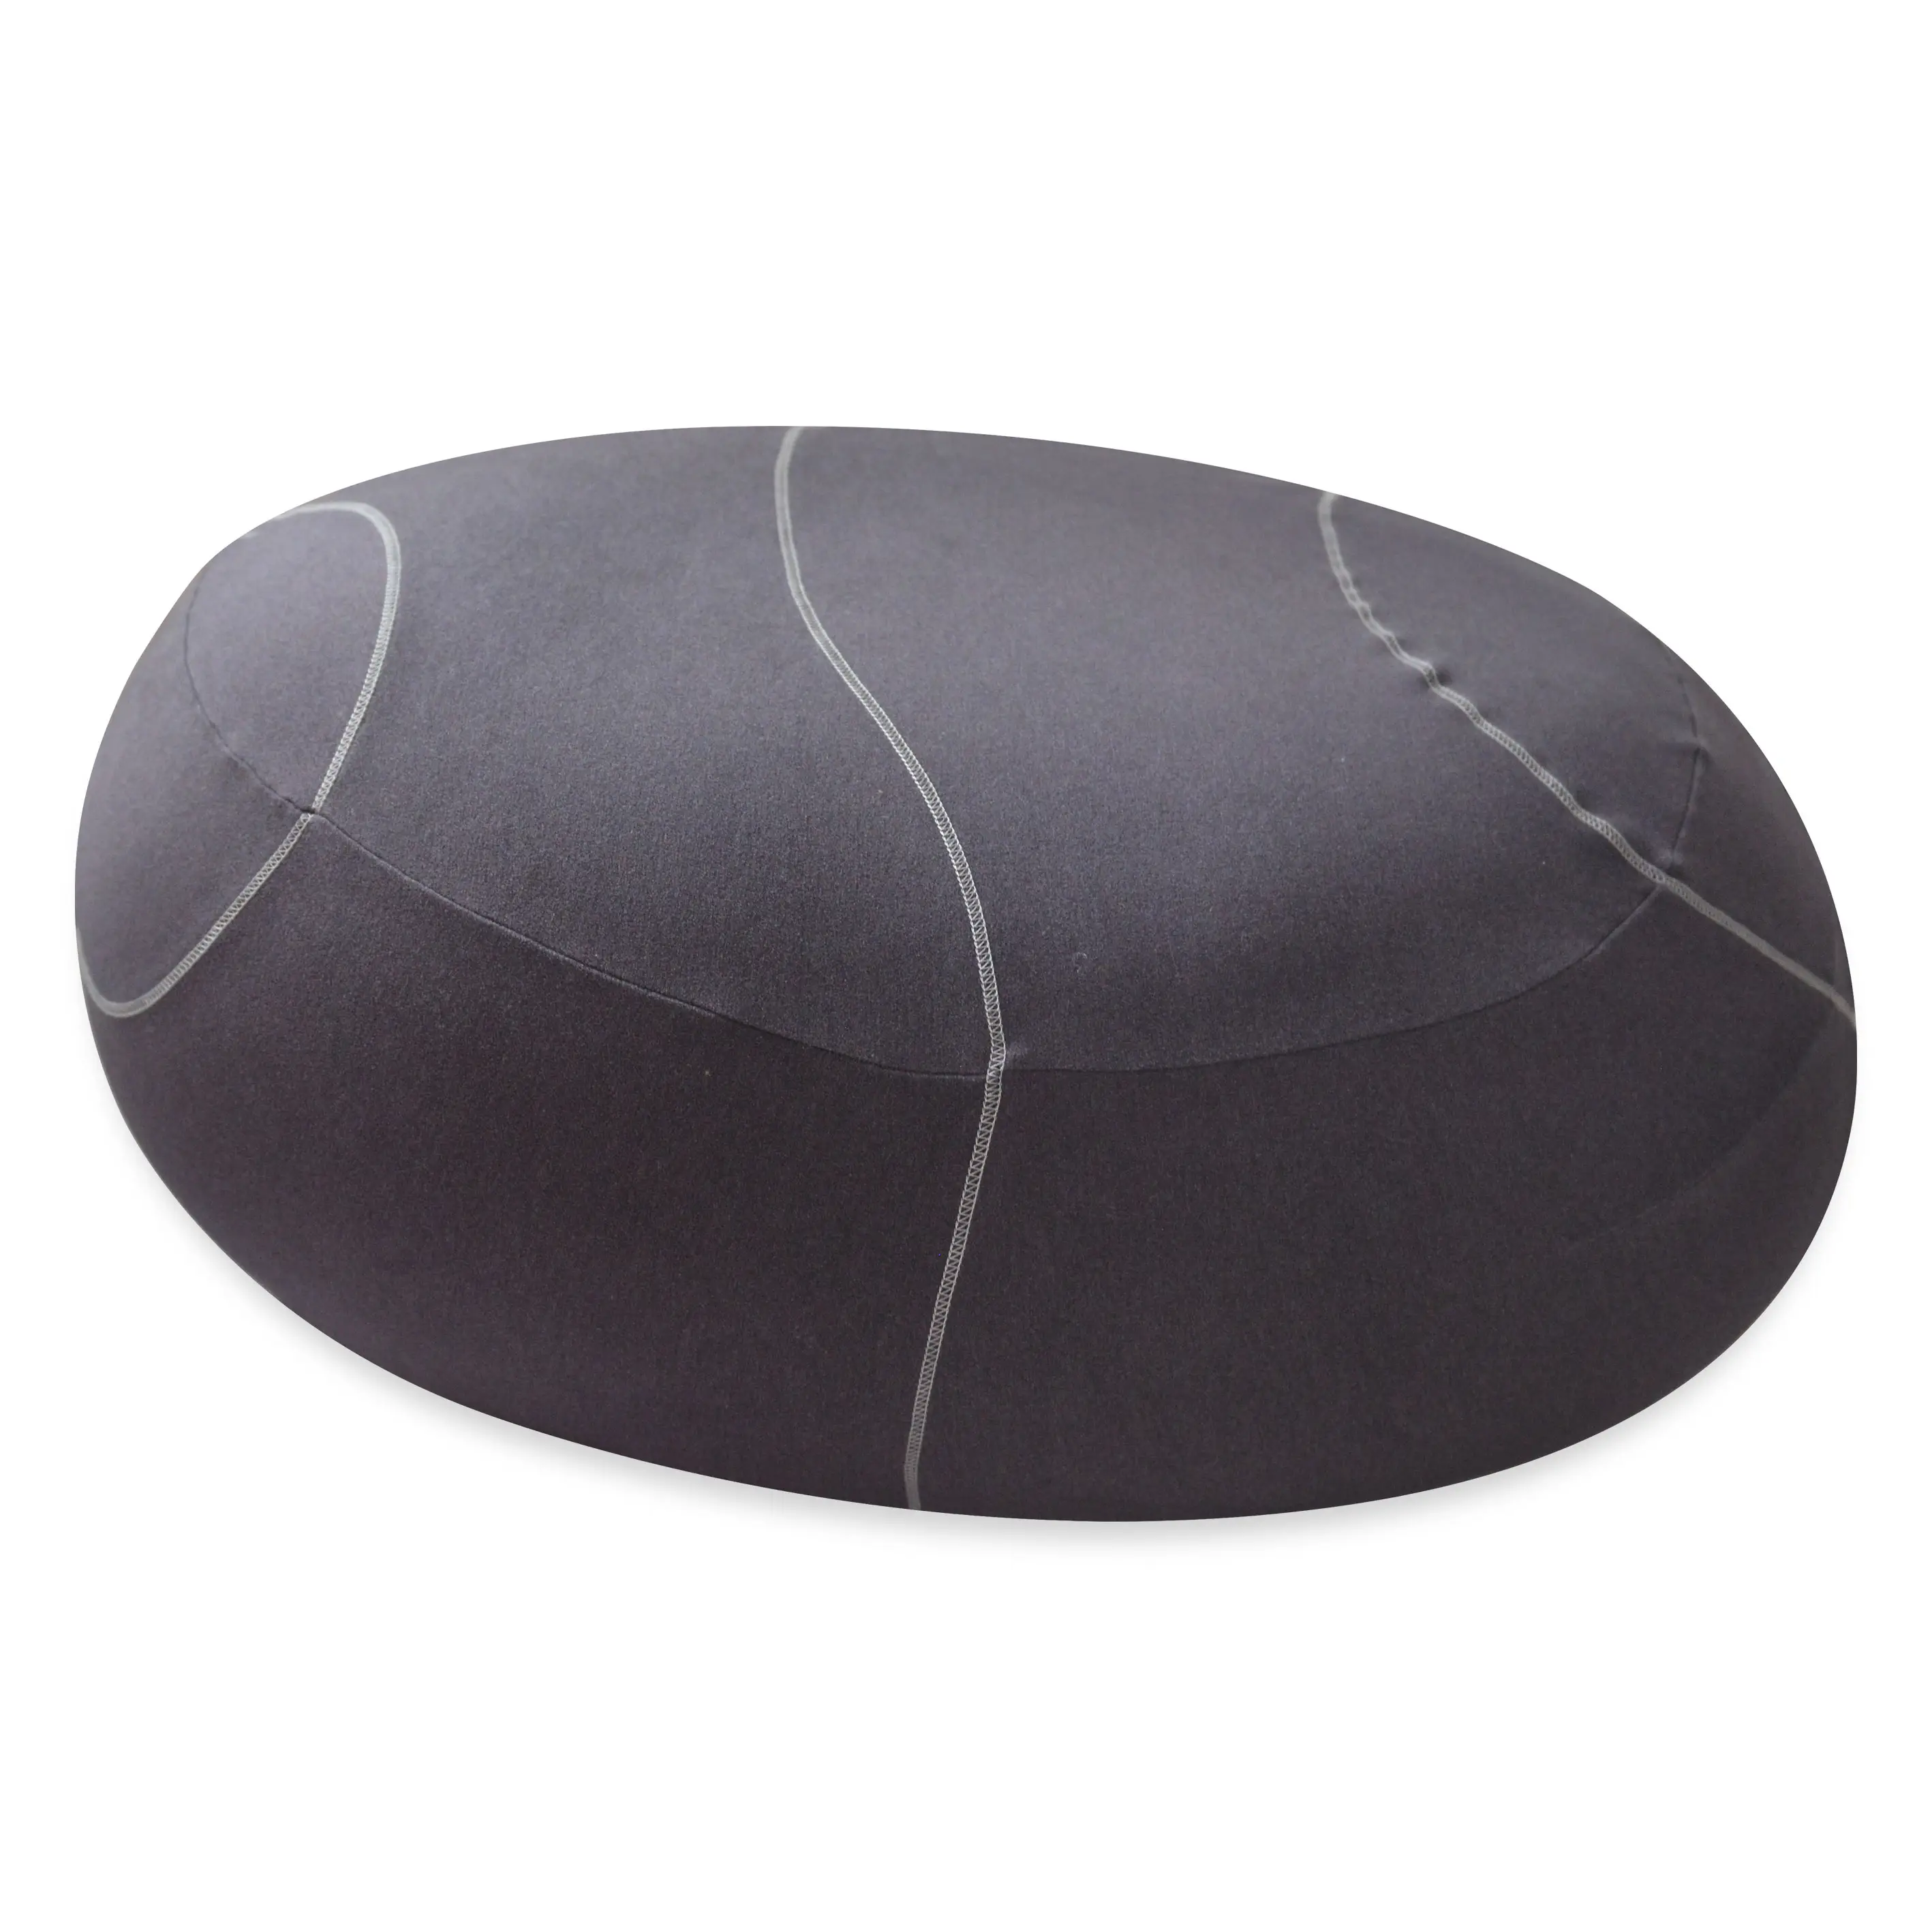 Высококачественный домашний текстиль, сжатая упаковка, огромная бархатная мягкая подушка в форме каменного камня, подушка для кровати